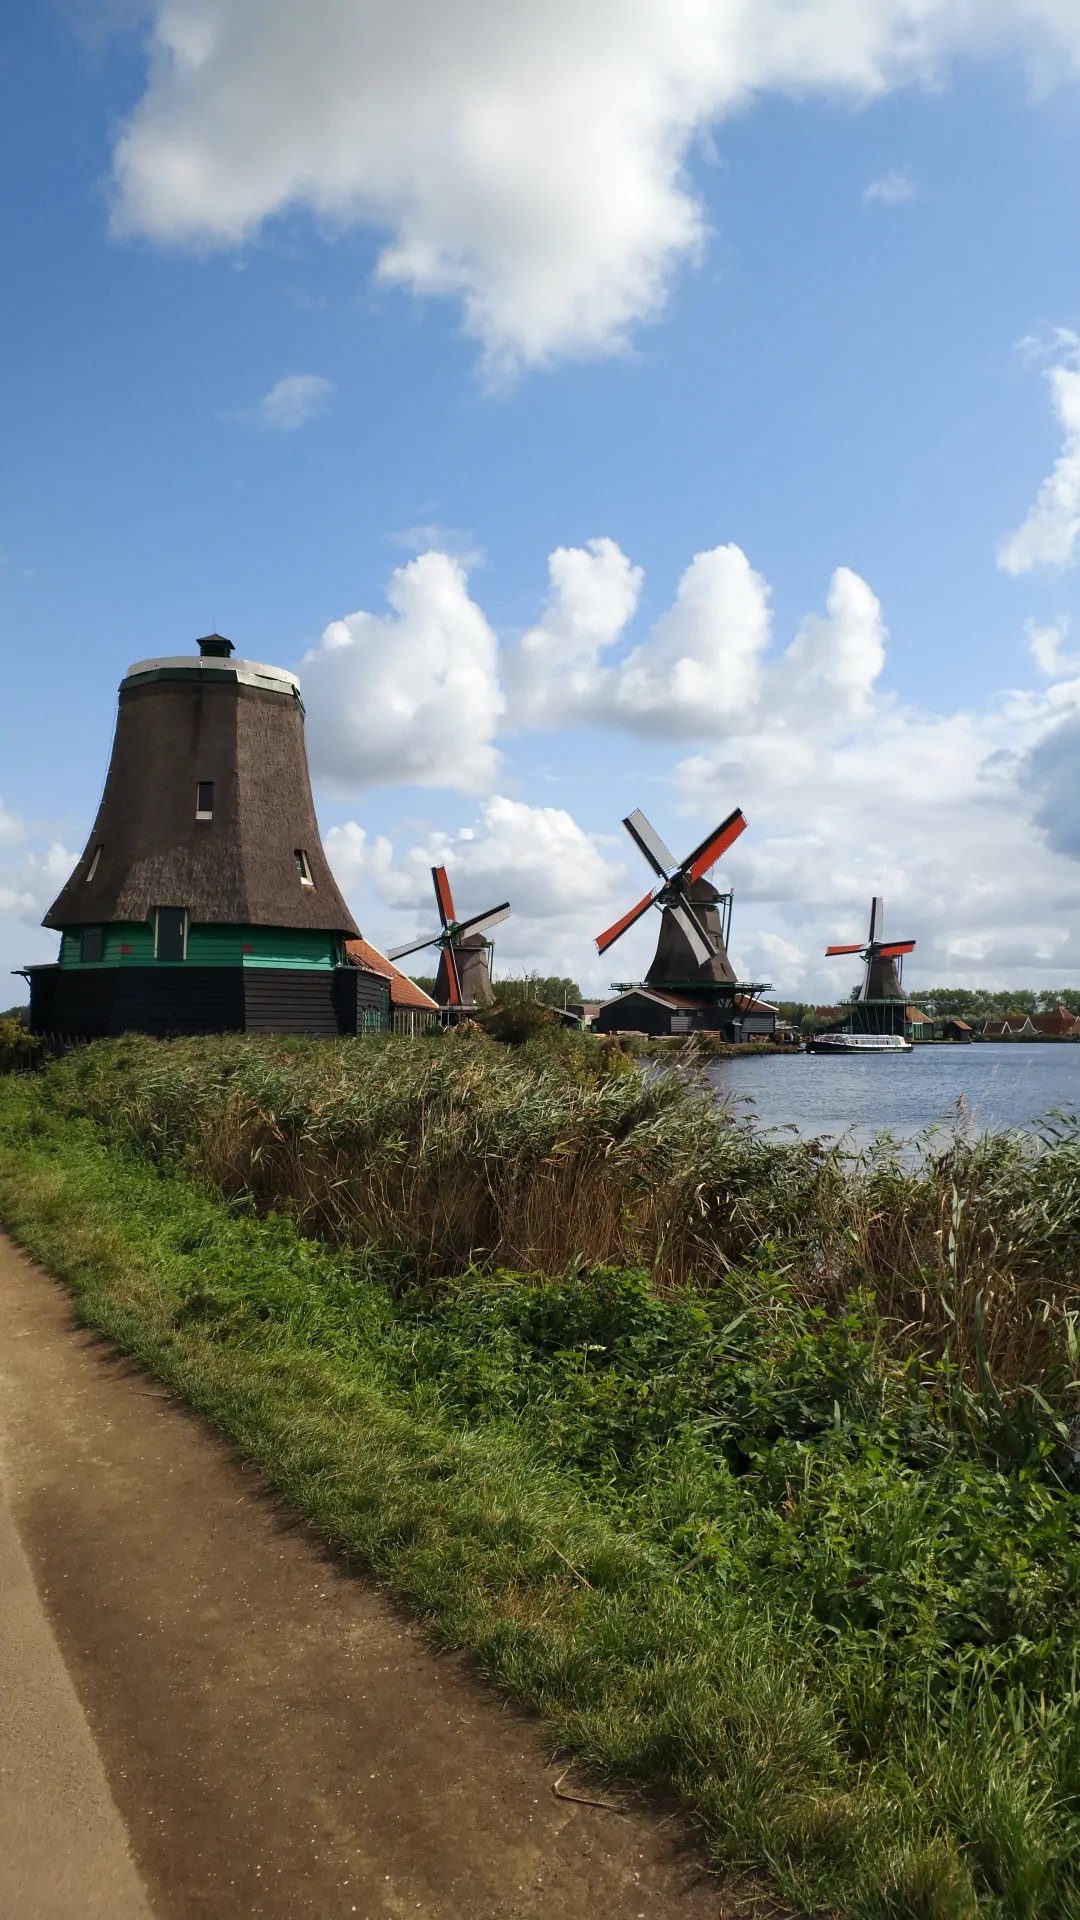 风车村是有居民居住、开放式的保留区和博物馆，位于阿姆斯特丹北方15公里。古老的建筑生动描绘了17、1